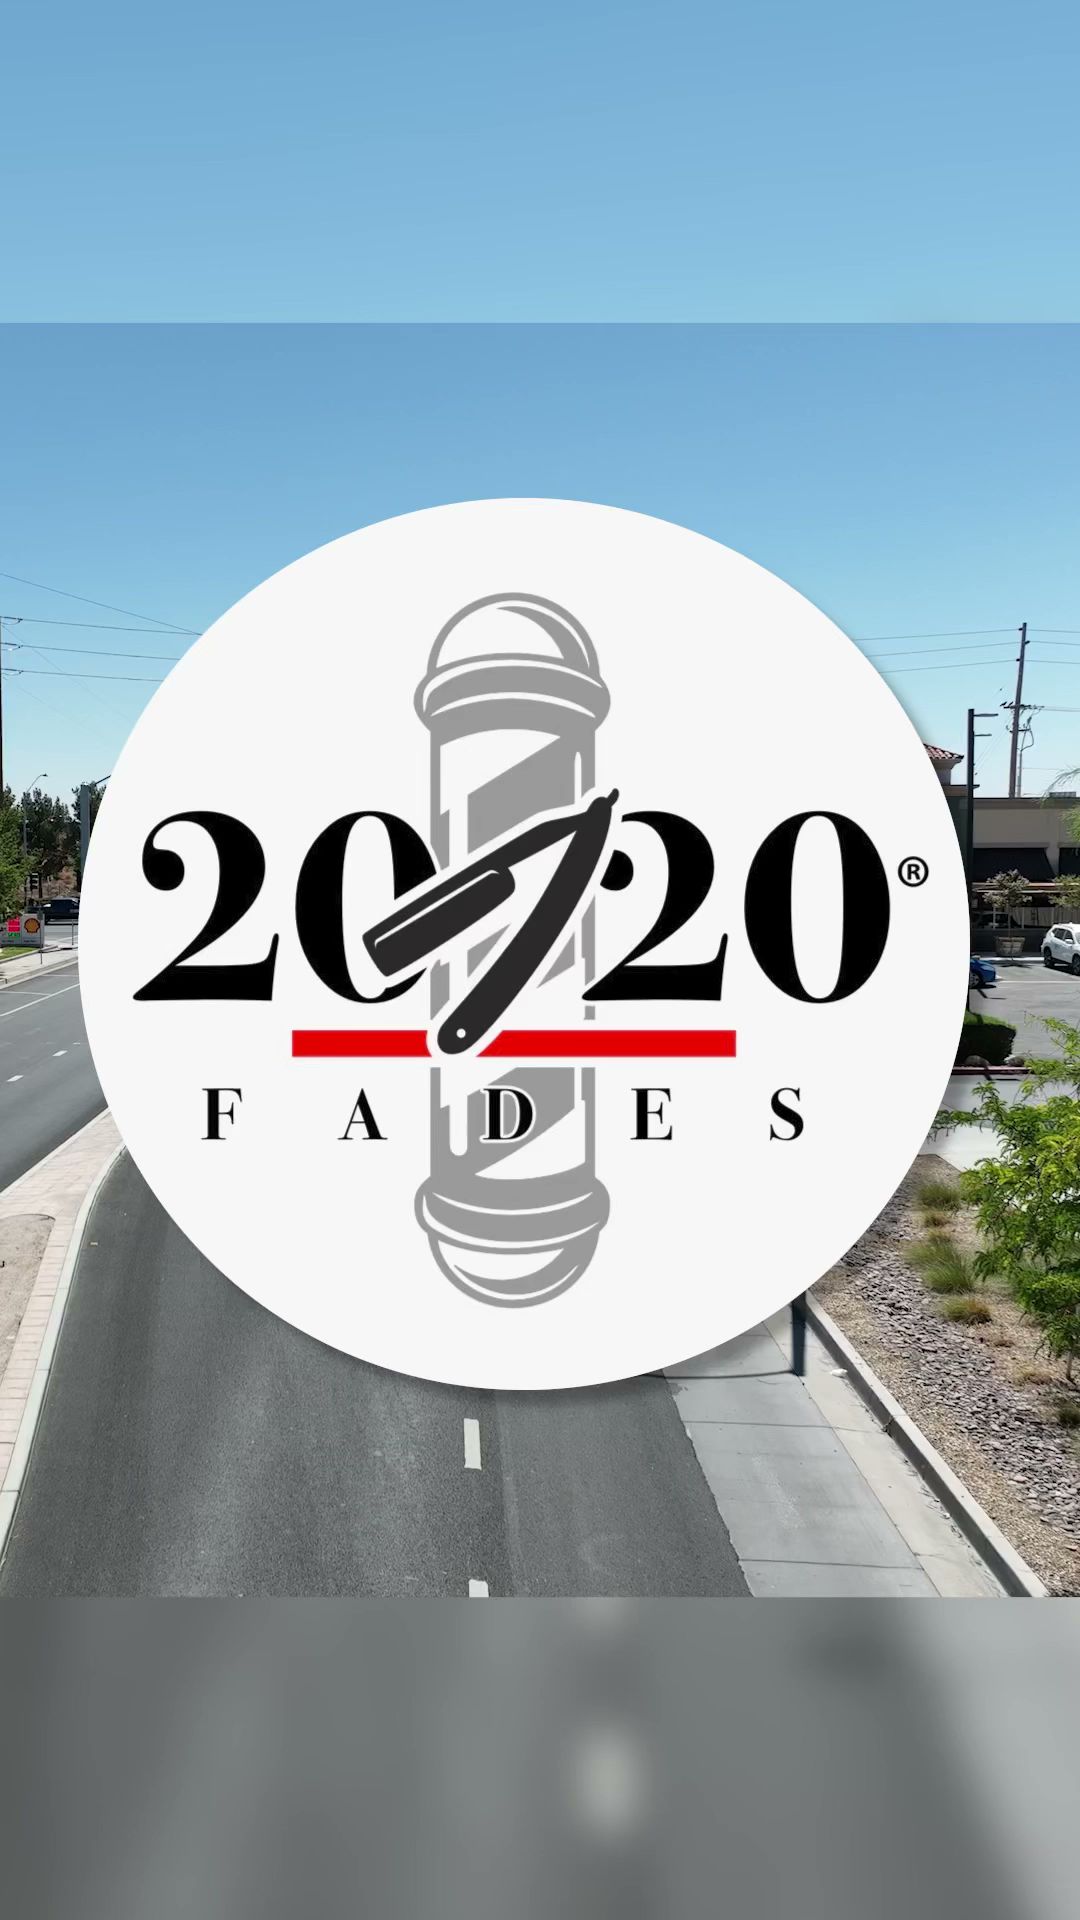 2020 Fades Barber Shop